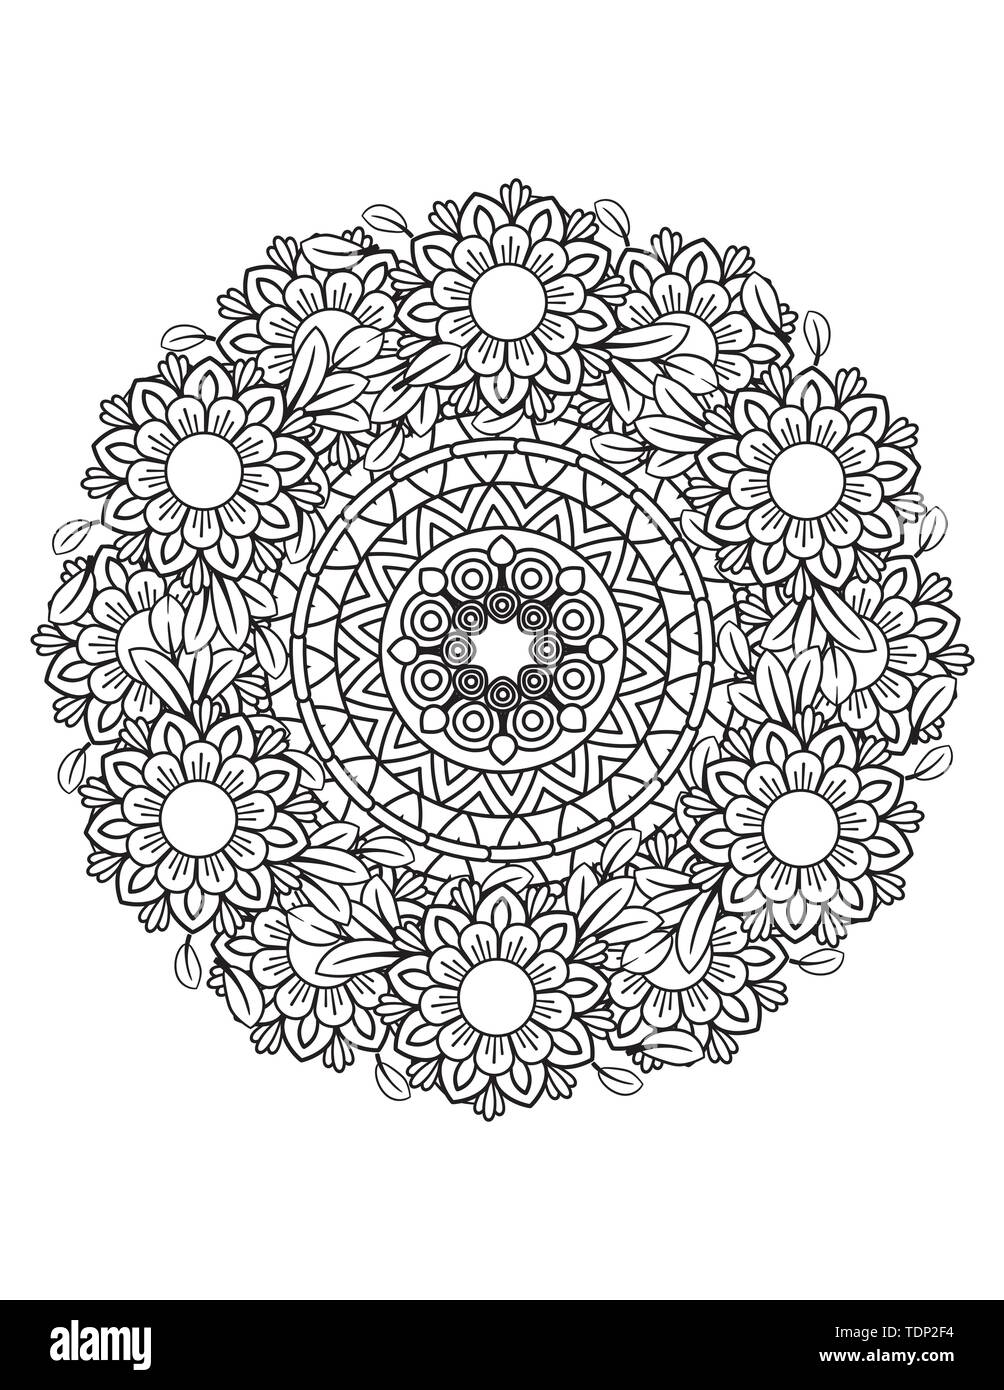 Adulto Página para colorear con dibujos florales. Doodle flores en blanco y negro. Bouquet line art ilustración vectorial aislado sobre fondo blanco. Elemento de diseño Ilustración del Vector